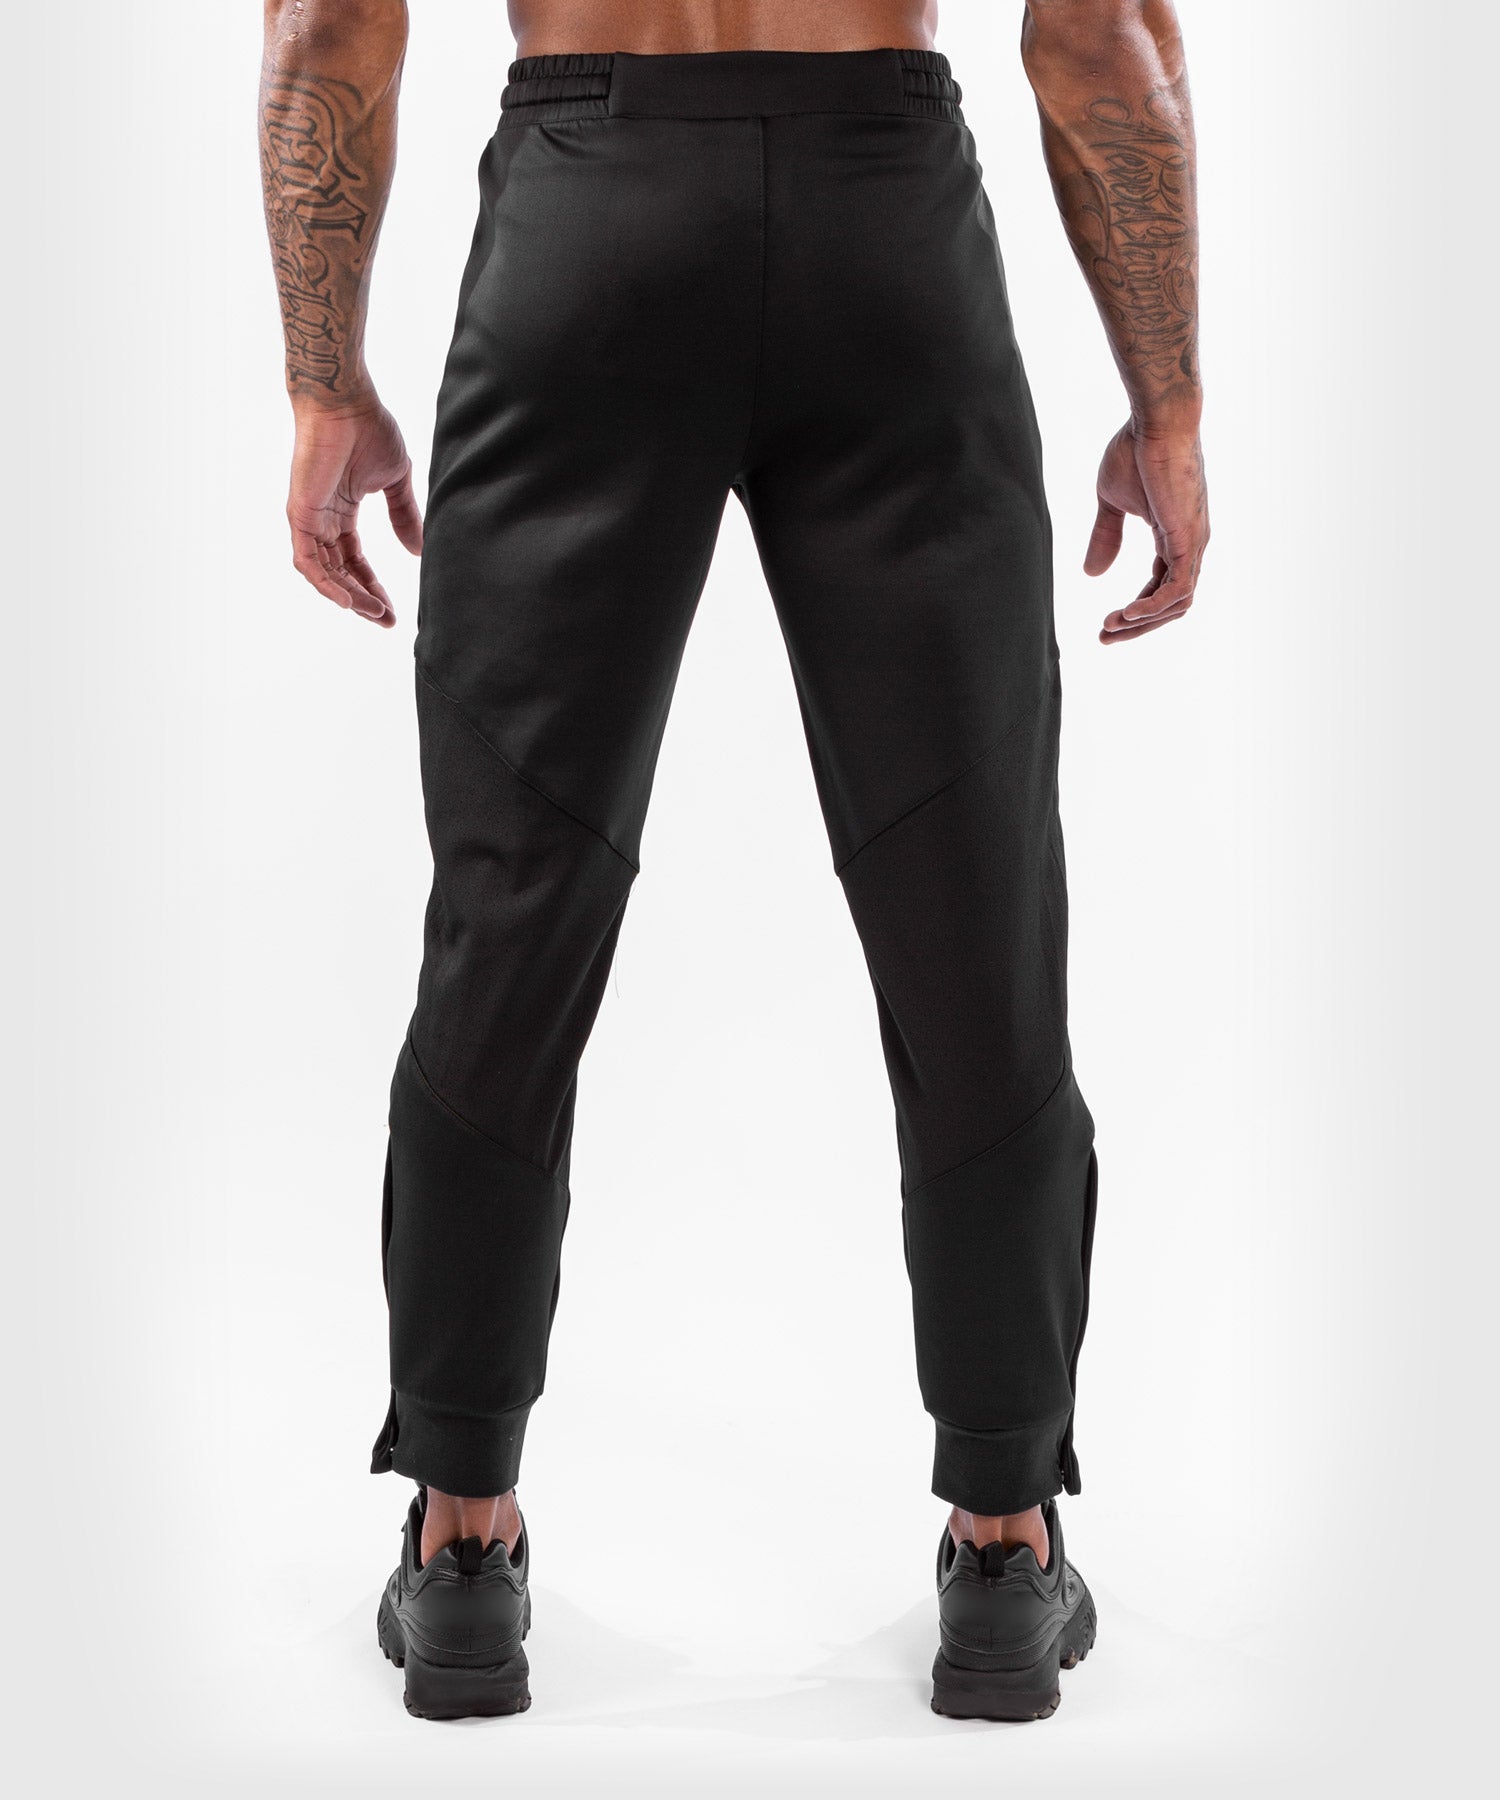 Pantalon pour hommes (survêtement) UFC VENUM - Authentic - Noir